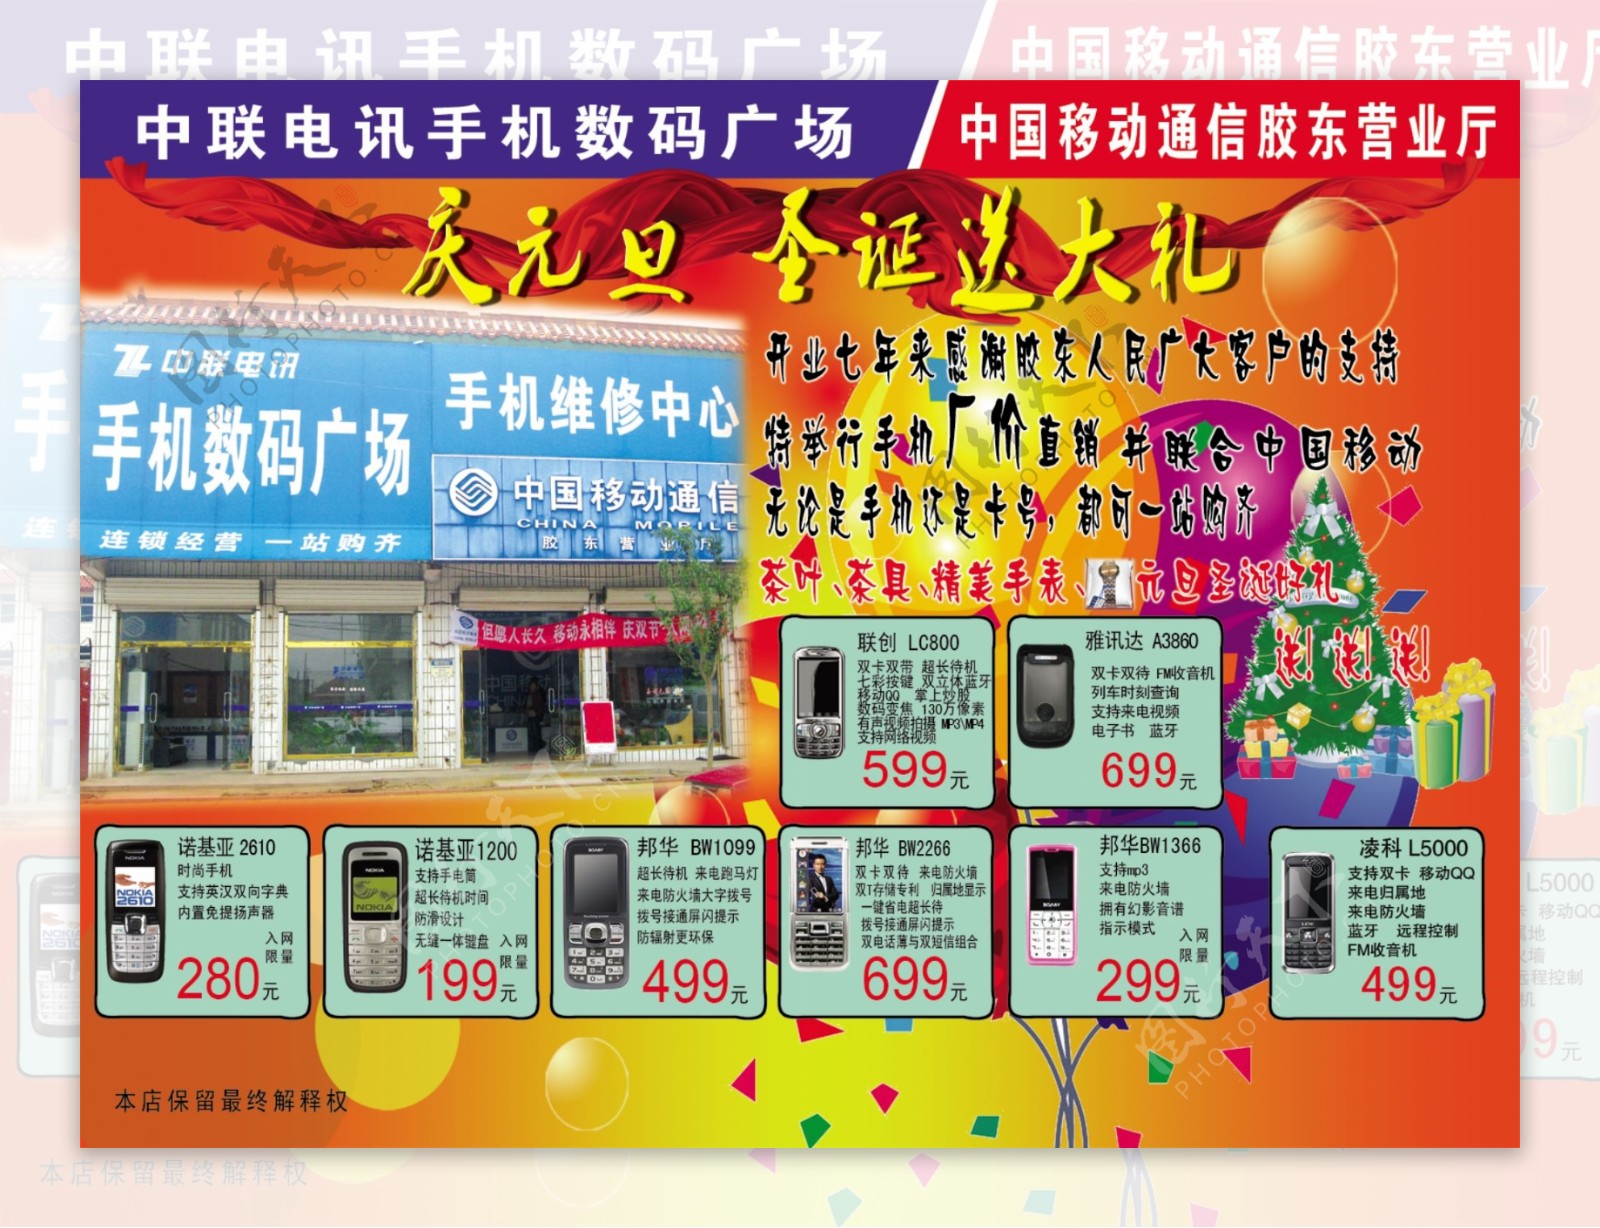 中联手机圣诞节优惠活动海报手机彩页矢量气球手机矢量圣诞礼物广告设计海报设计源文件库400DPIPSD格式